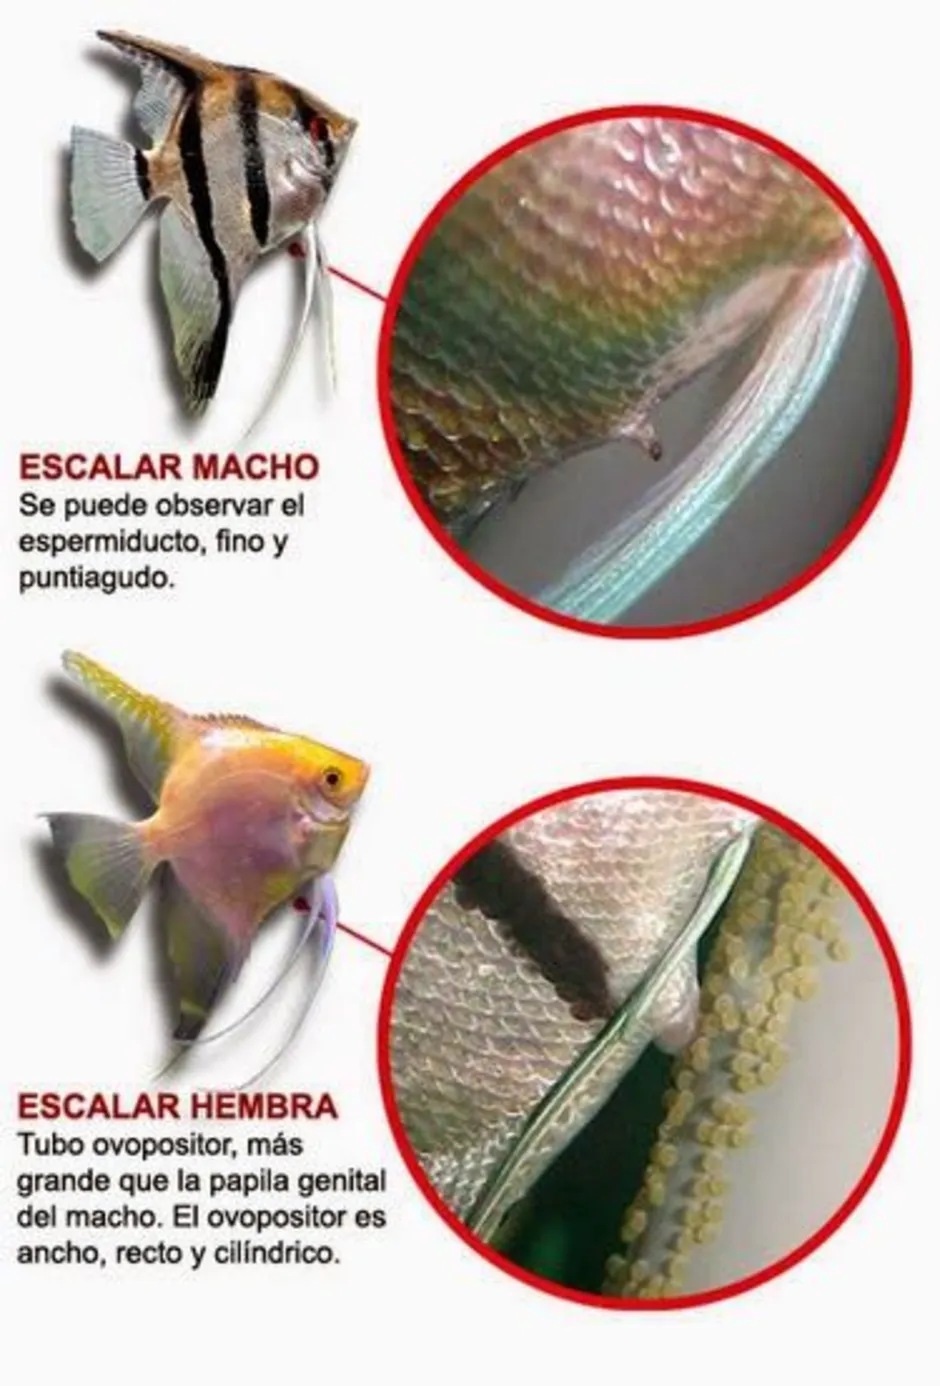 Скалярия самец и самка. Скалярия рыбка отличие самки от самца. Рыбки скалярий самец самка. Скалярии отличия самца от самки. Как отличить самца скалярии